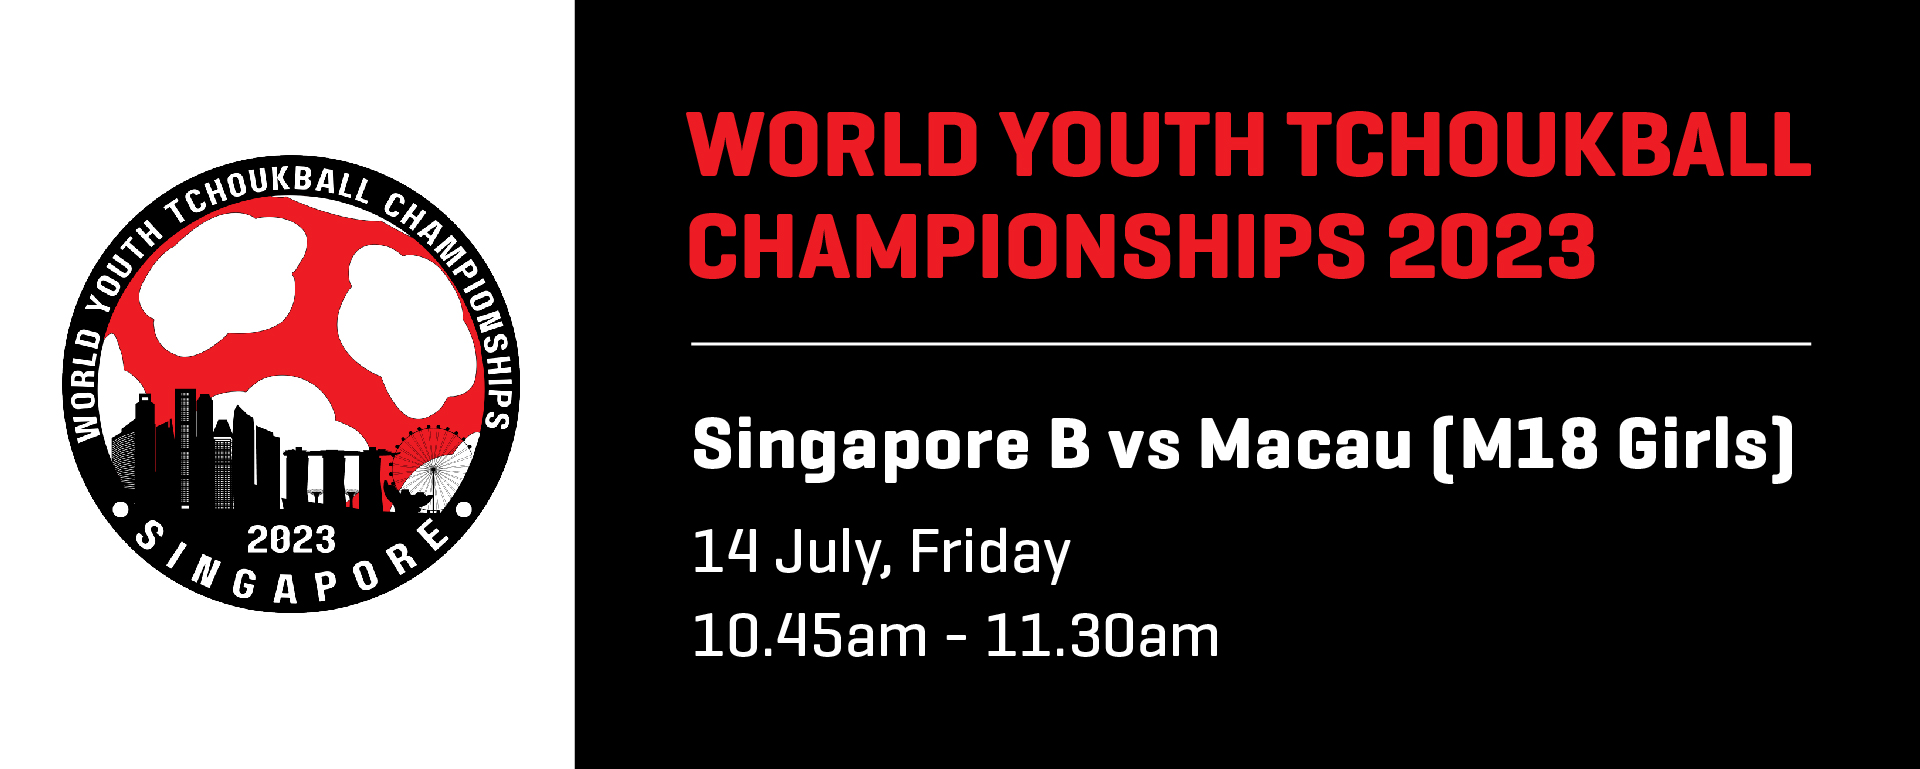 World Youth Tchoukball Championships 2023 | M18 Girls Singapore B vs Macau